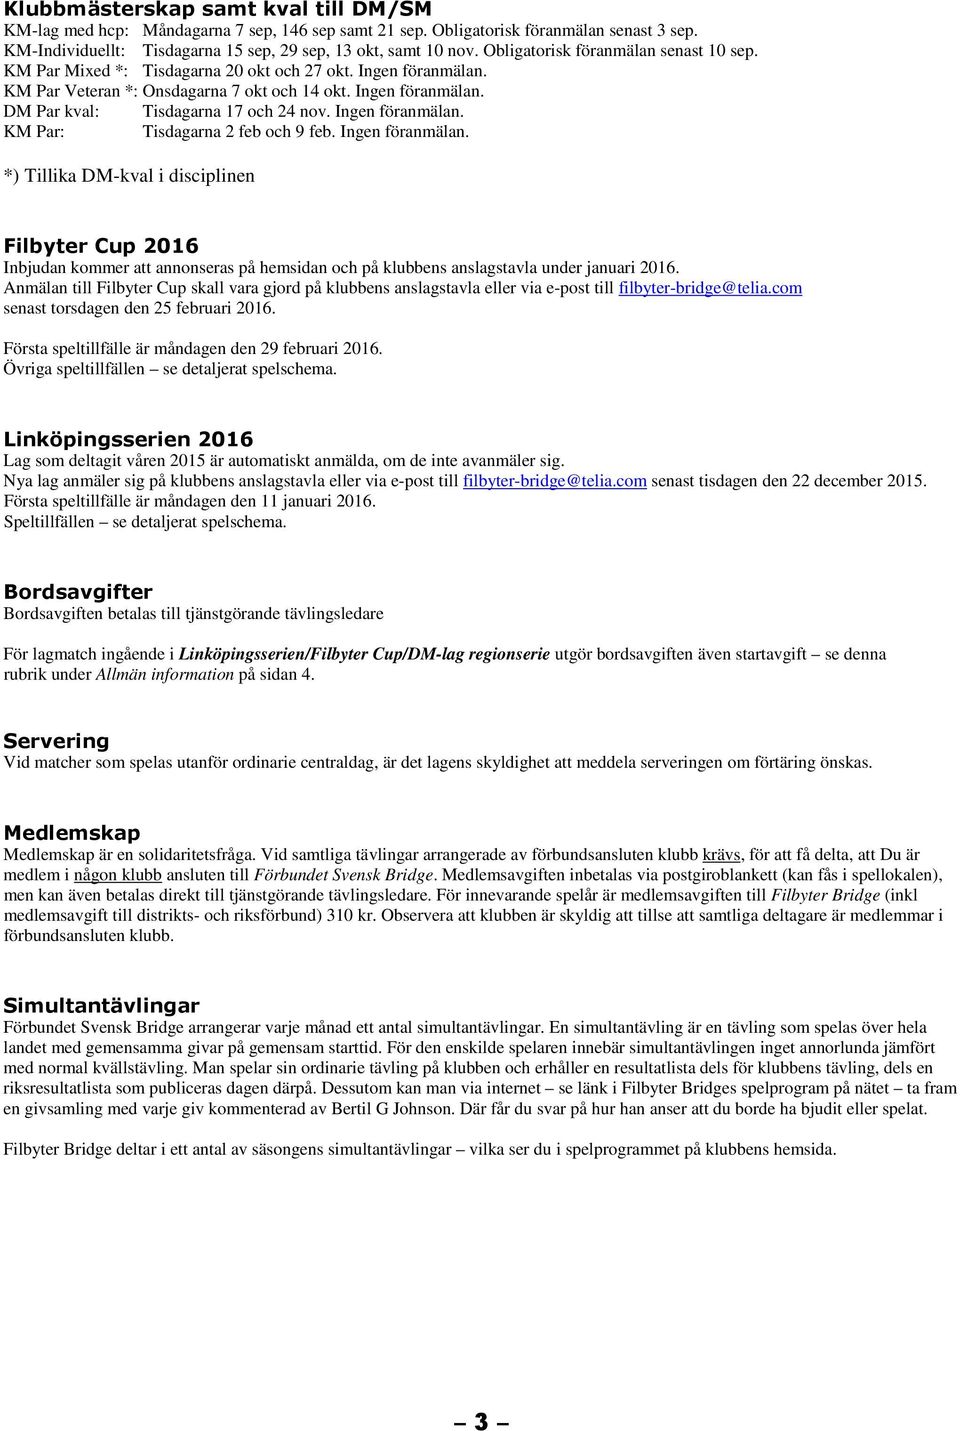 FILBYTER BRIDGE Medlemsmatrikel & preliminärt spelprogram - PDF ...